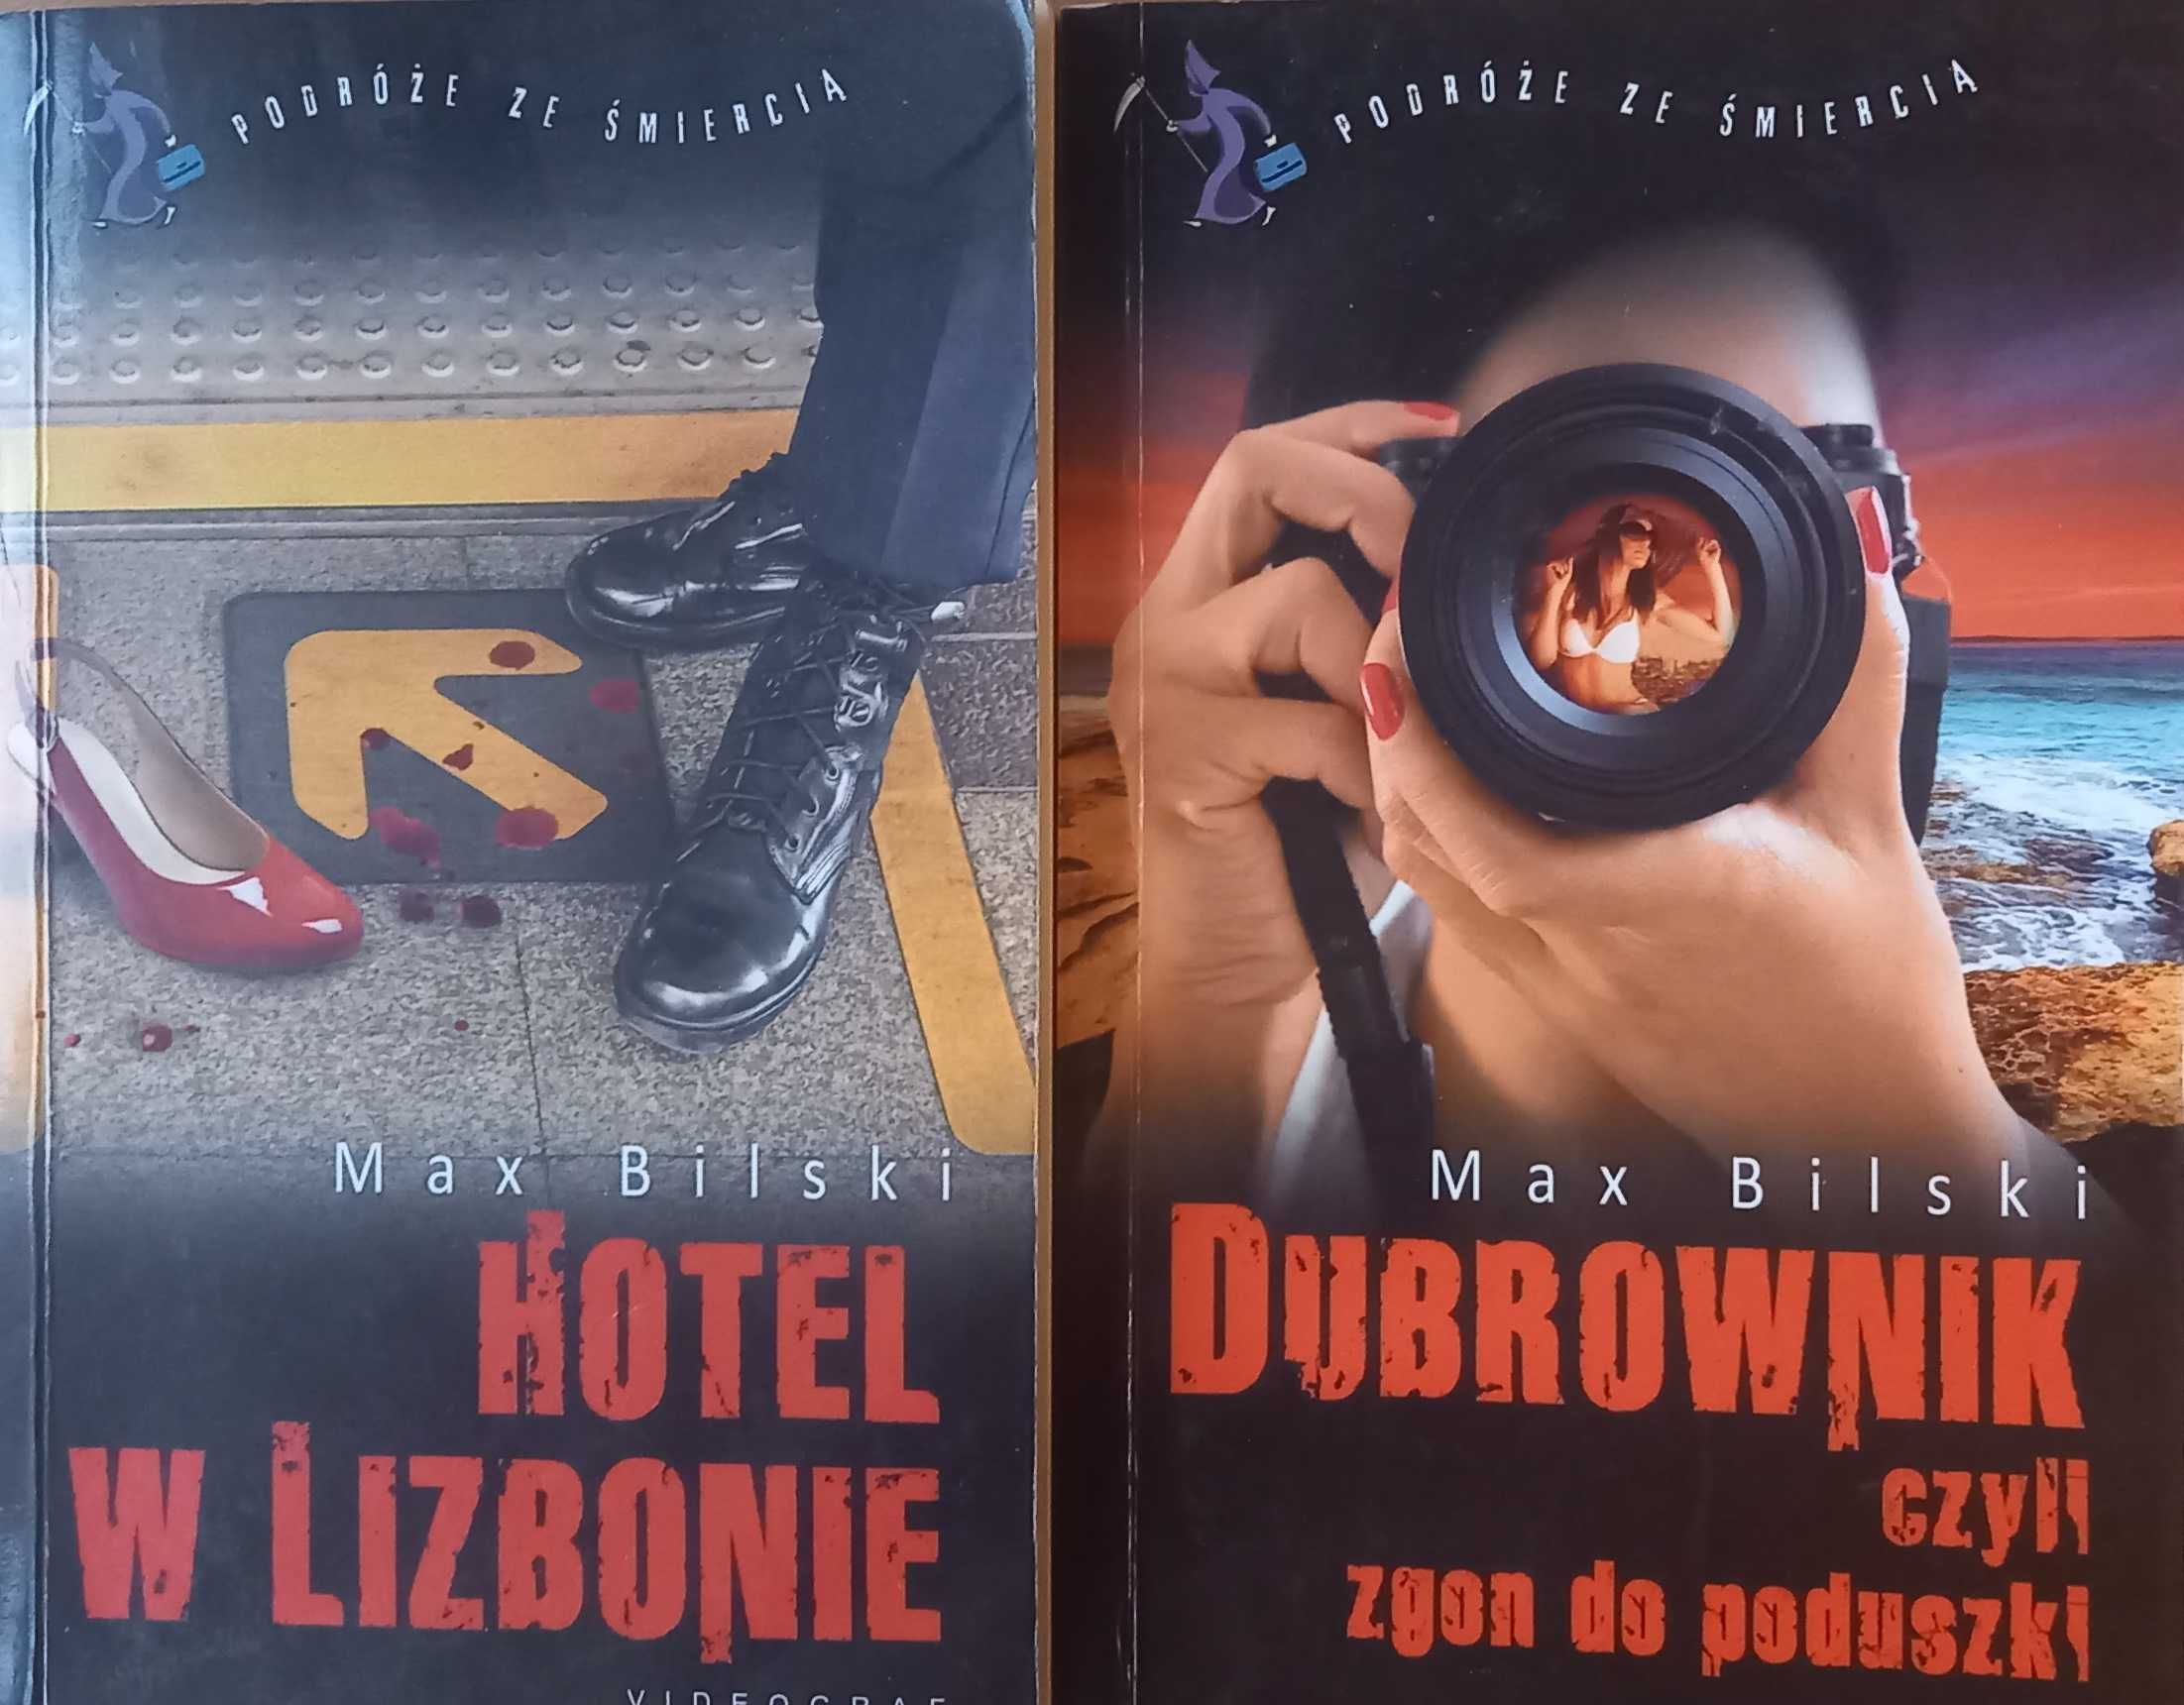 Max Bilski: Hotel w Lizbonie i Dubrownik, czyli zgon do poduszki